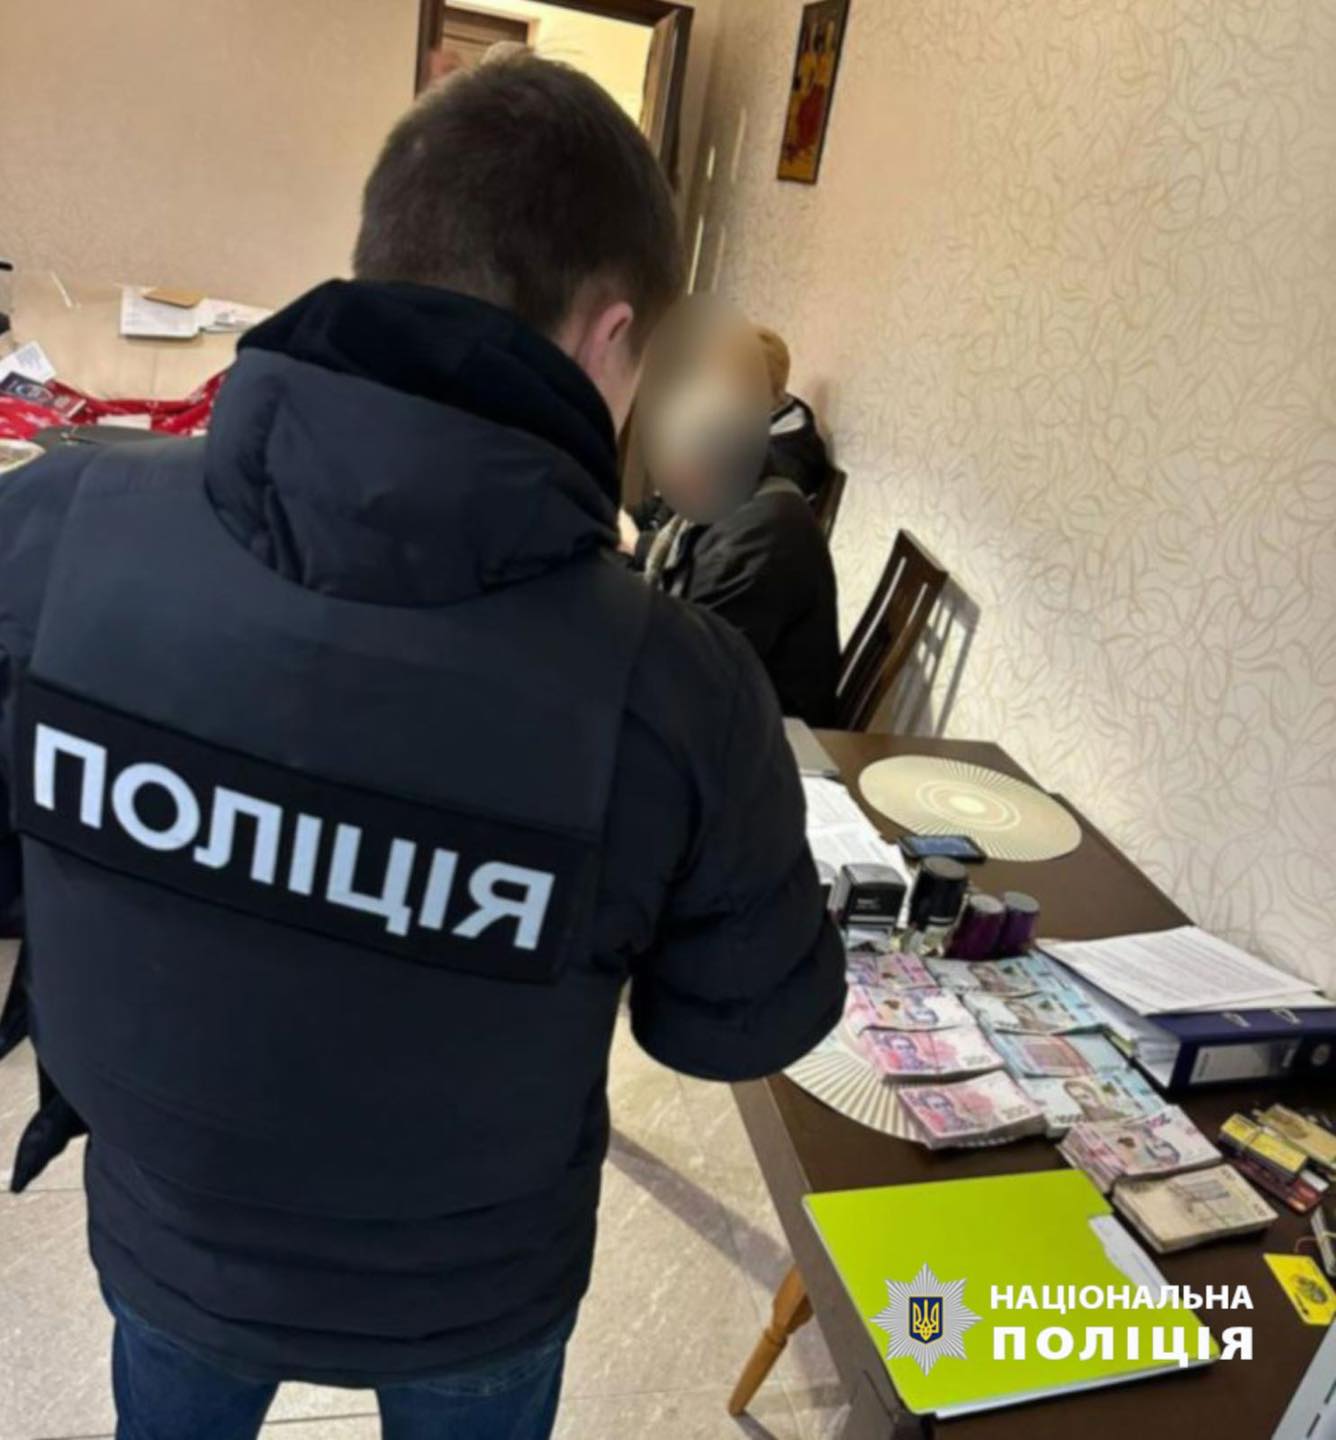 На Днепропетровщине группа дельцов нанесла 3,7 млн гривен убытков на ремонте столовой для военных